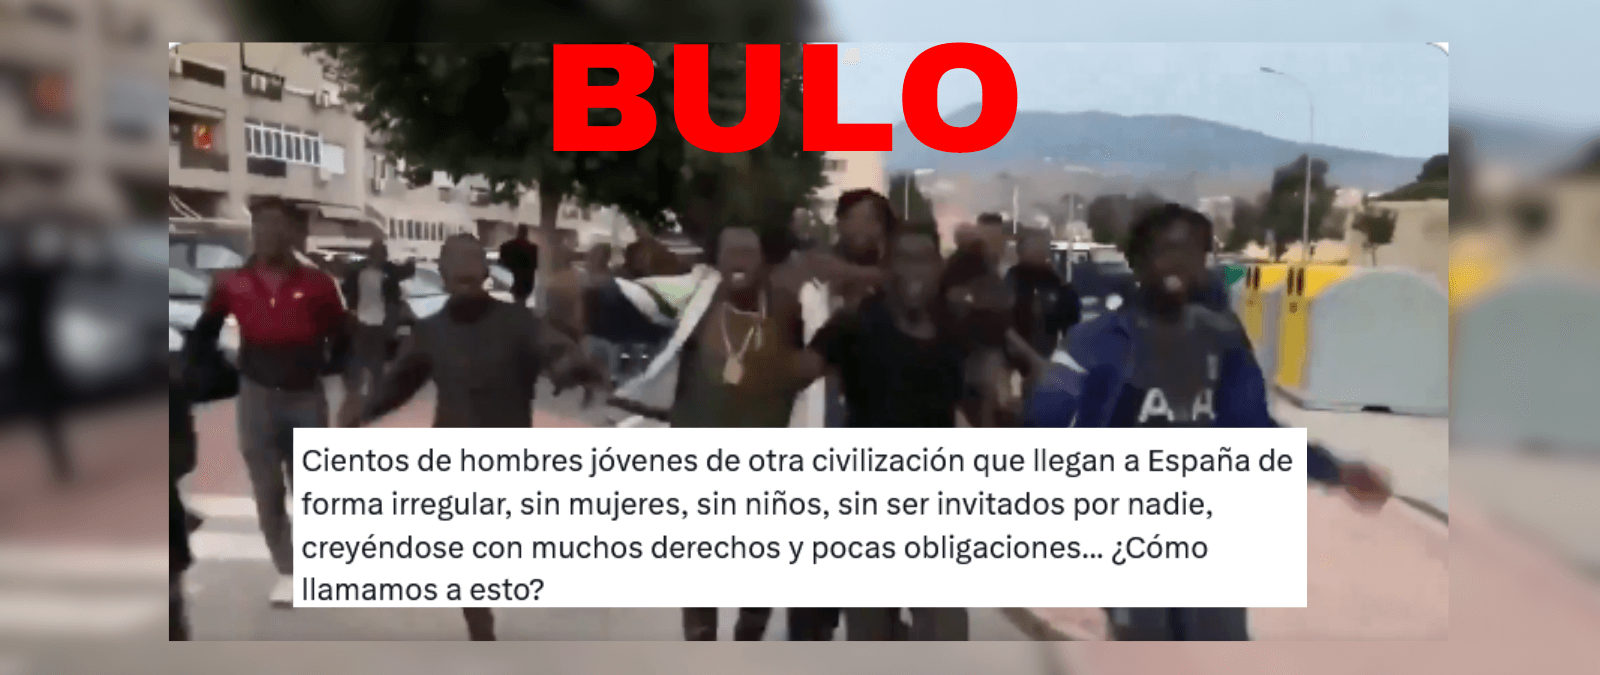 No, este vídeo que muestra a personas migrantes llegando a España no es actual: es de julio de 2021